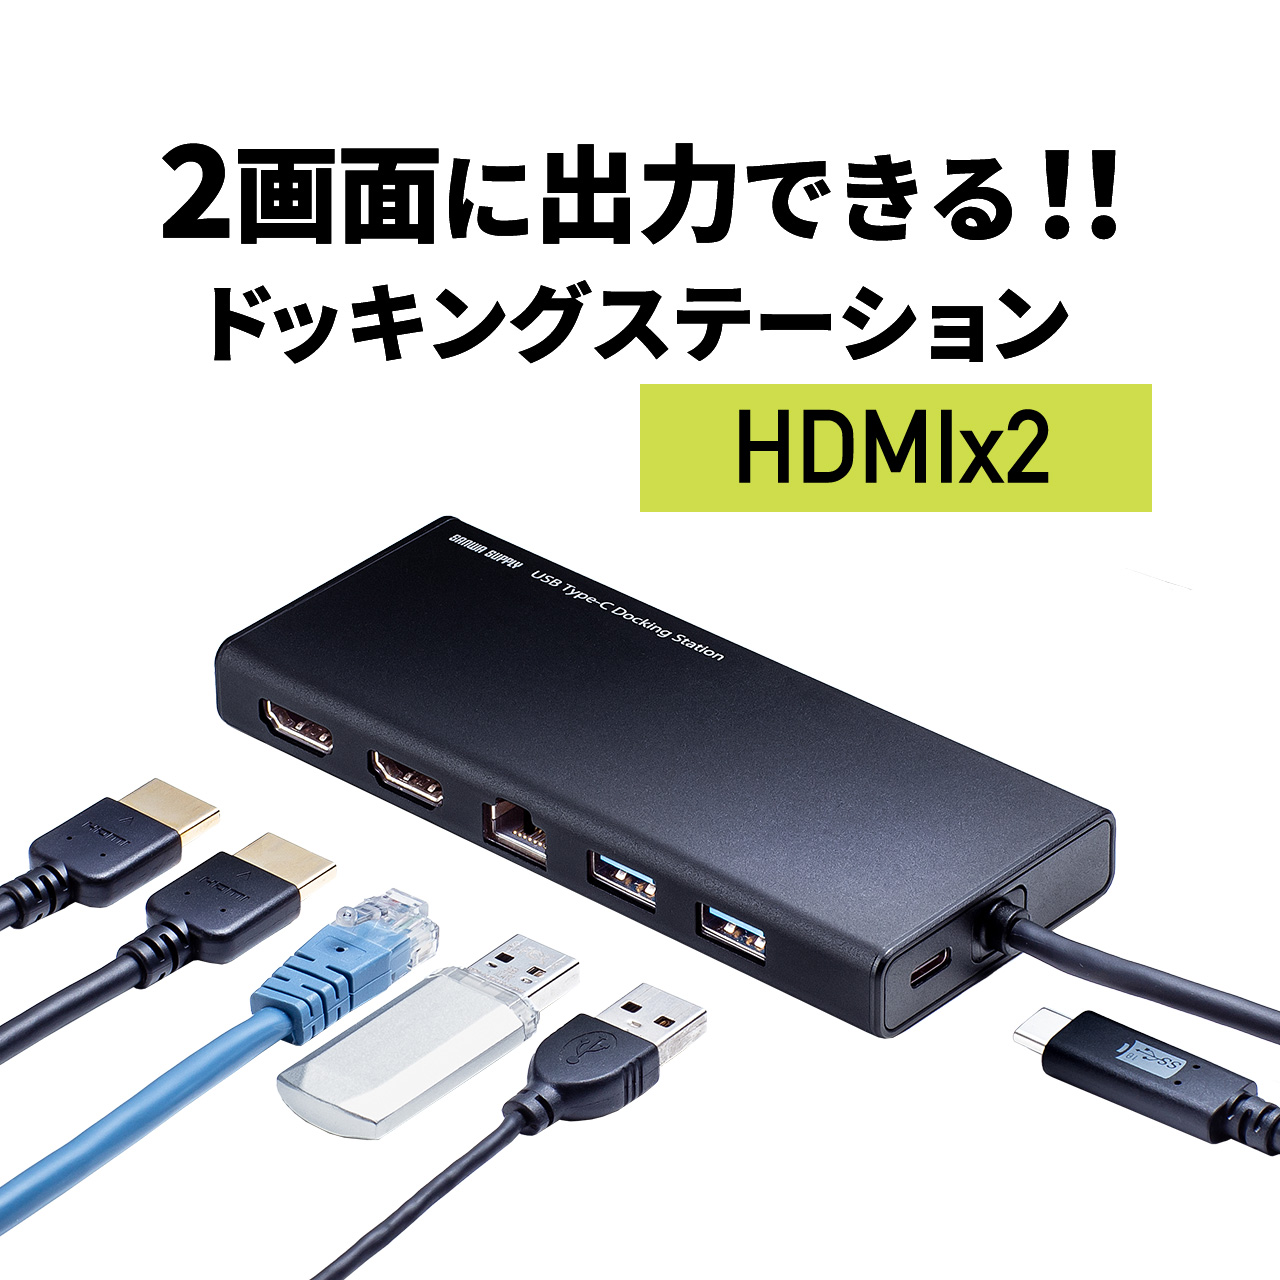 11060円 【数量限定】 パソコン切替器 ドッキングステーション Type-C HDMI接続対応 2台切替 KVMスイッチ HDMI PD給電対応 USBキーボード USBマウス USB機器 在宅勤務 テレワーク 切替器 mac対応